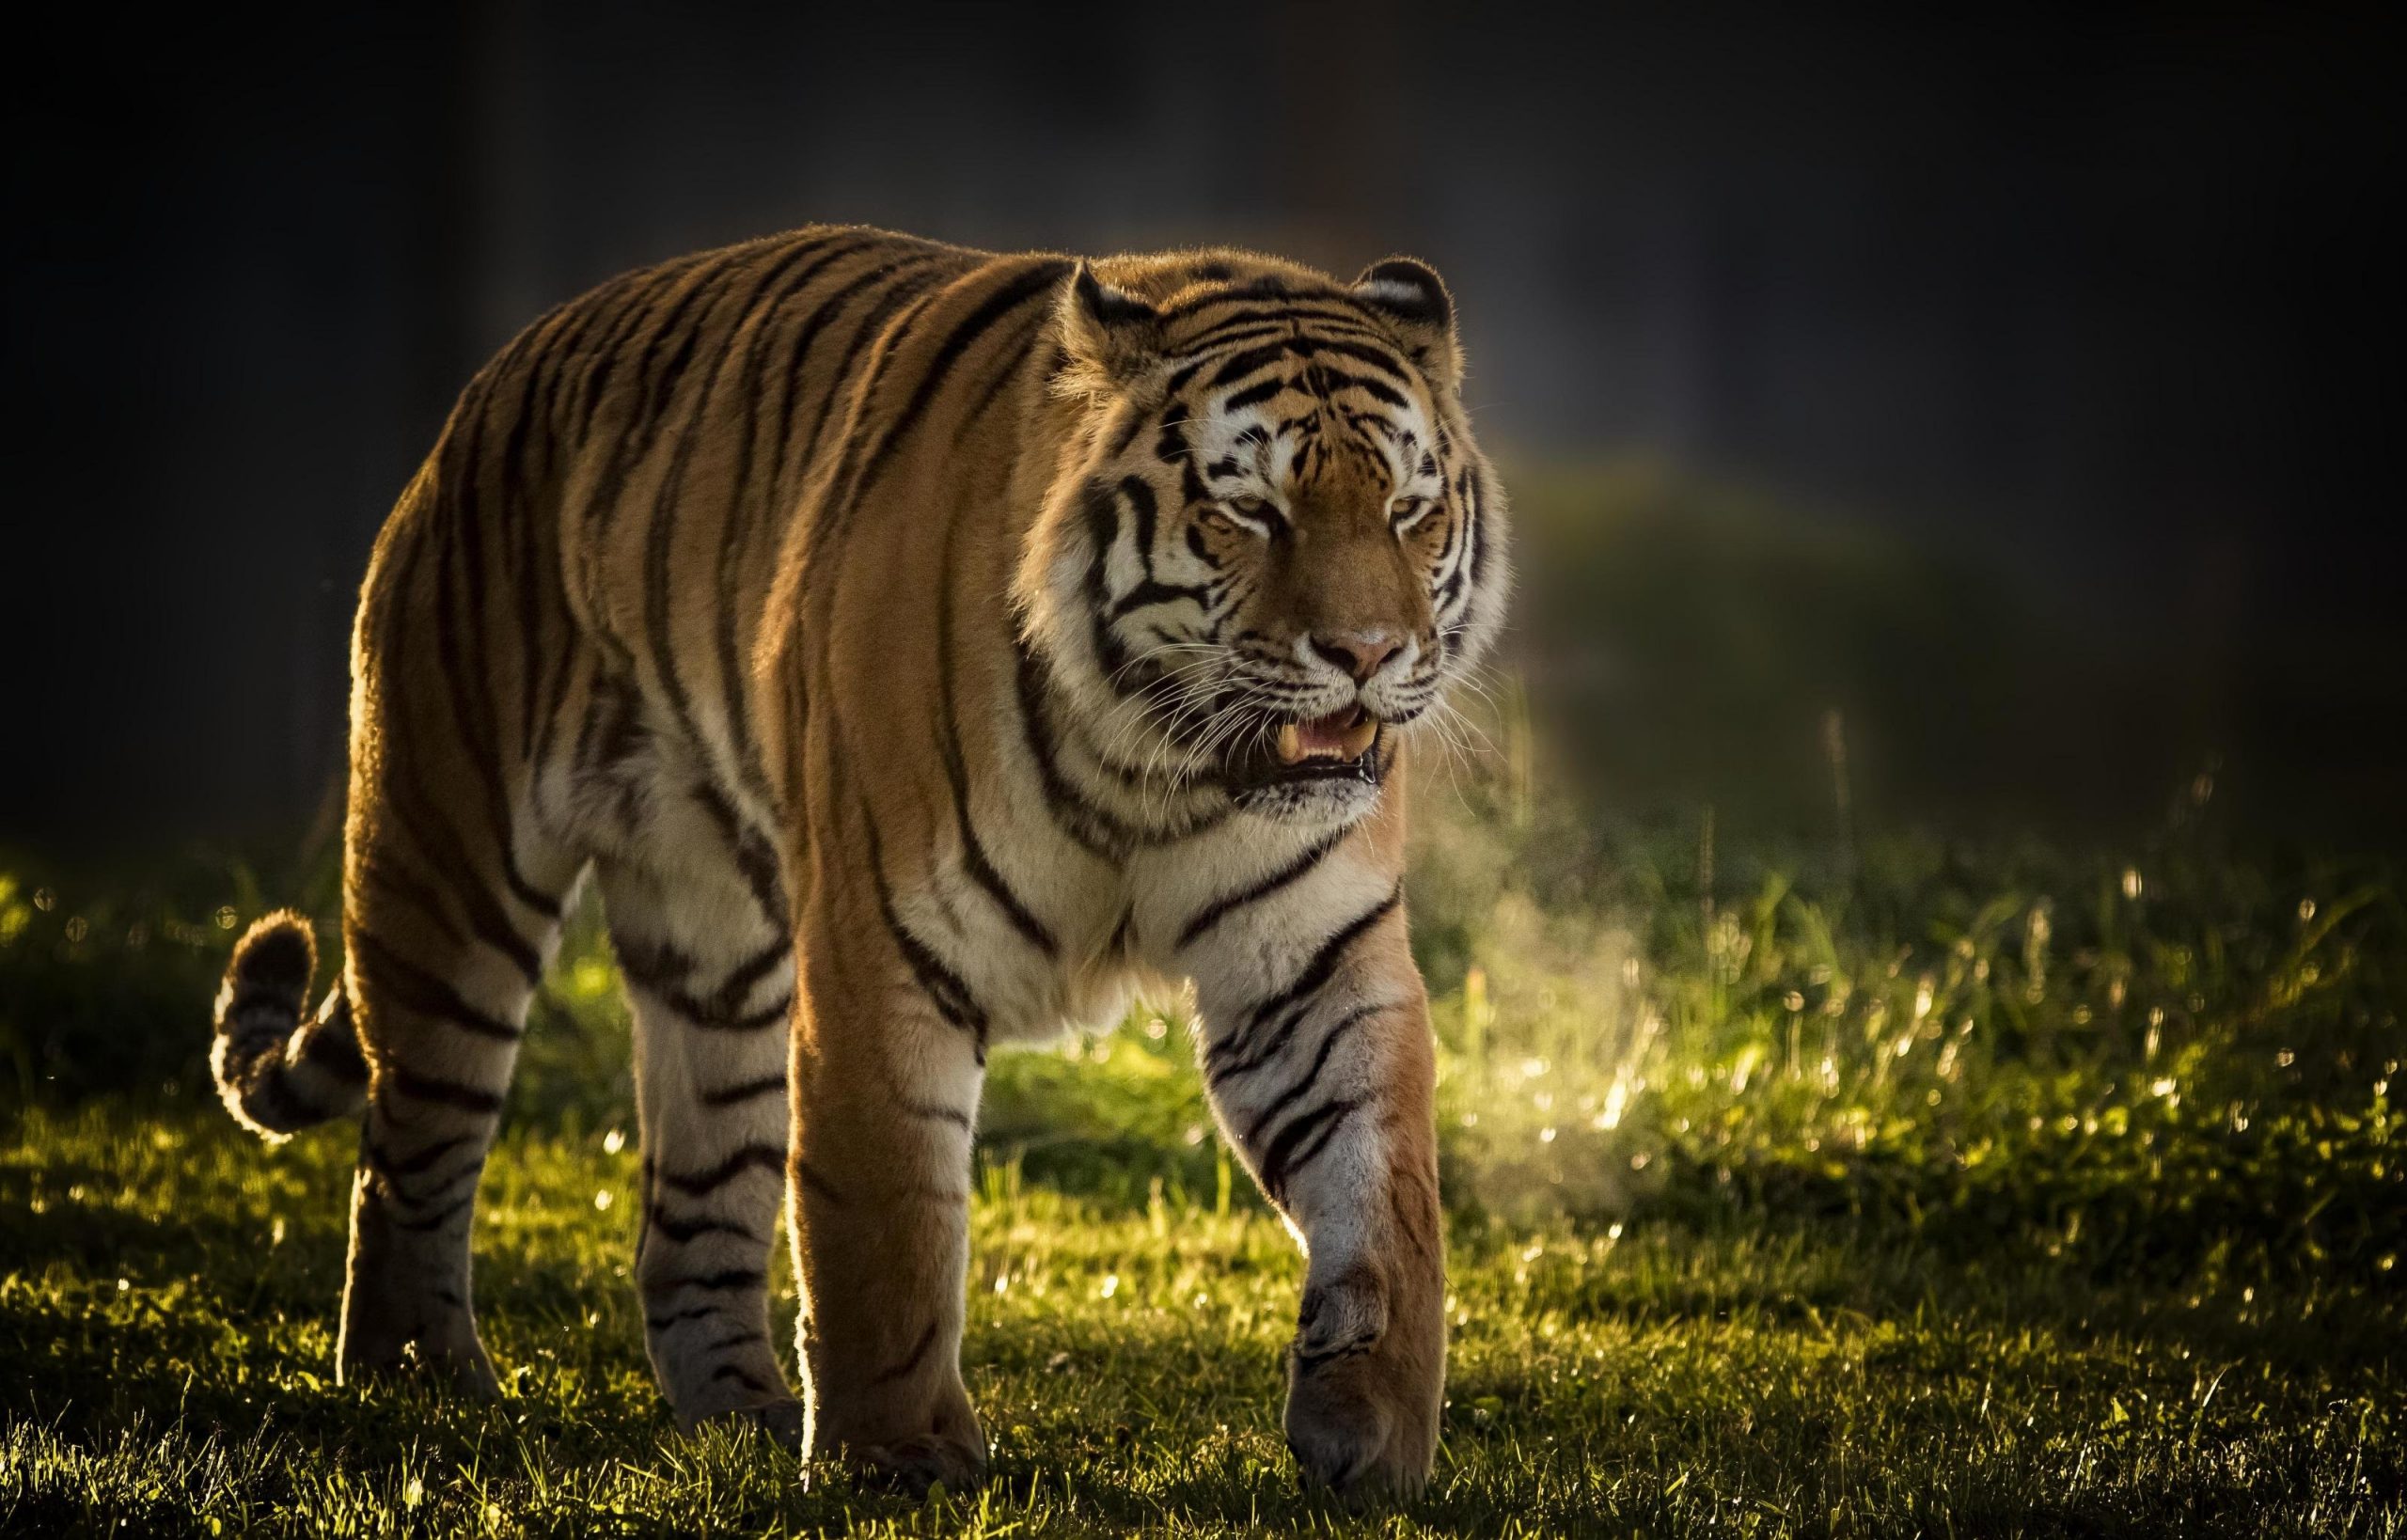 Dream Of A Tiger